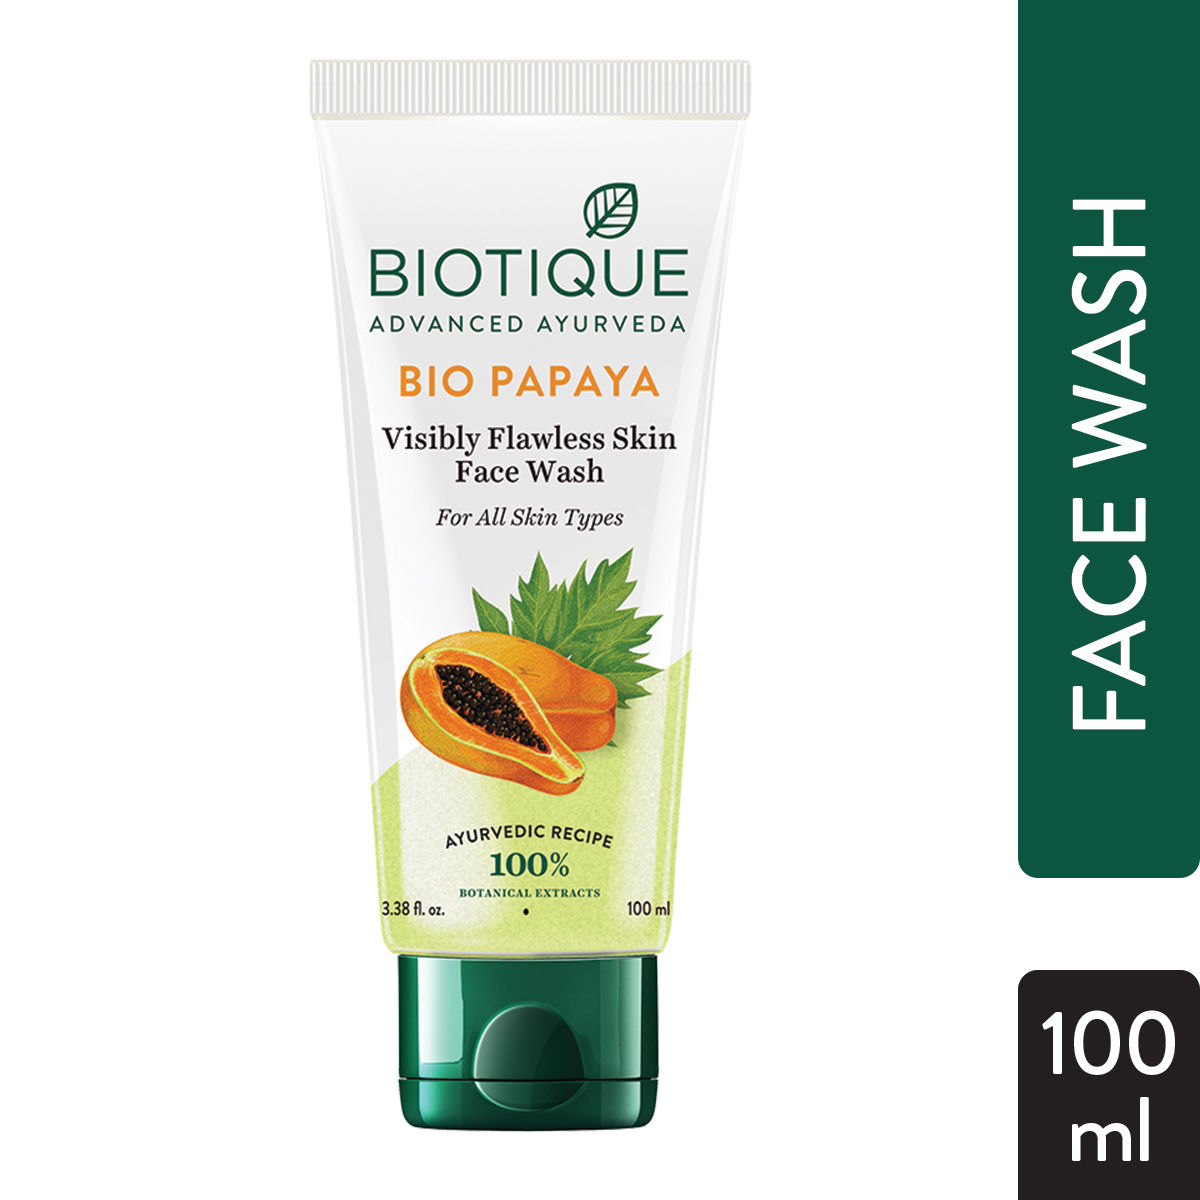 Buy Biotique Bio Papaya Visibly Flawless Skin Face Wash (100 ml) - Purplle